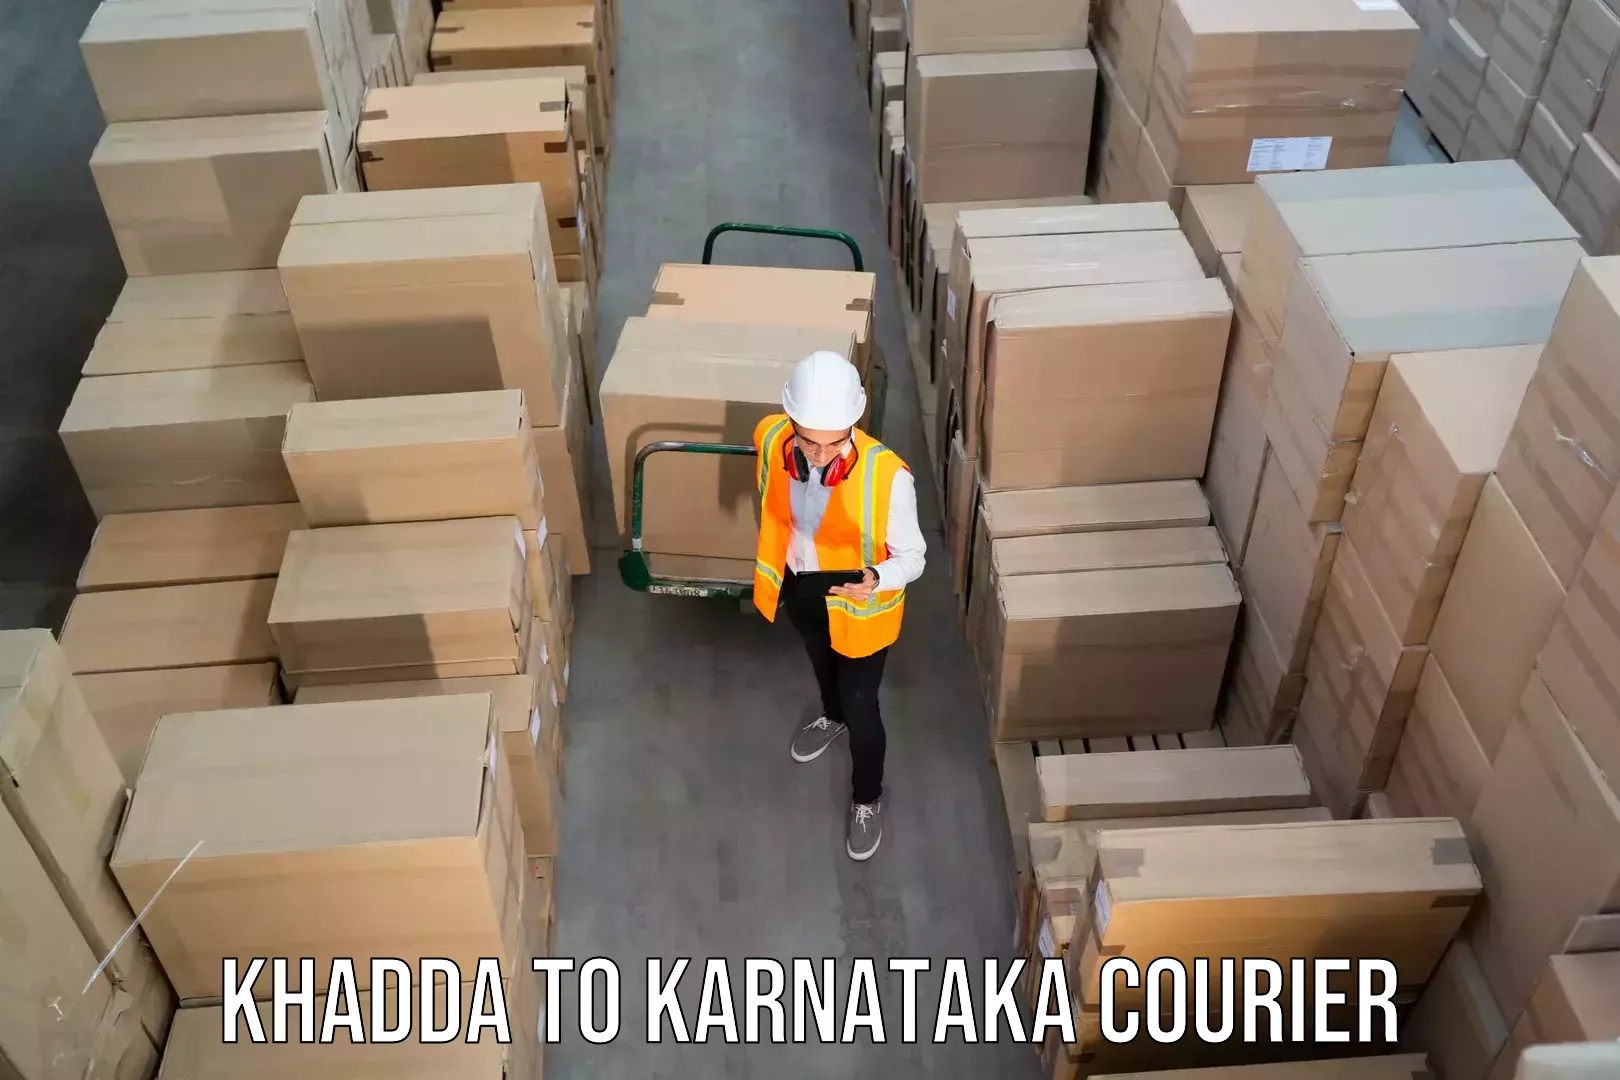 Affordable parcel service Khadda to Karnataka